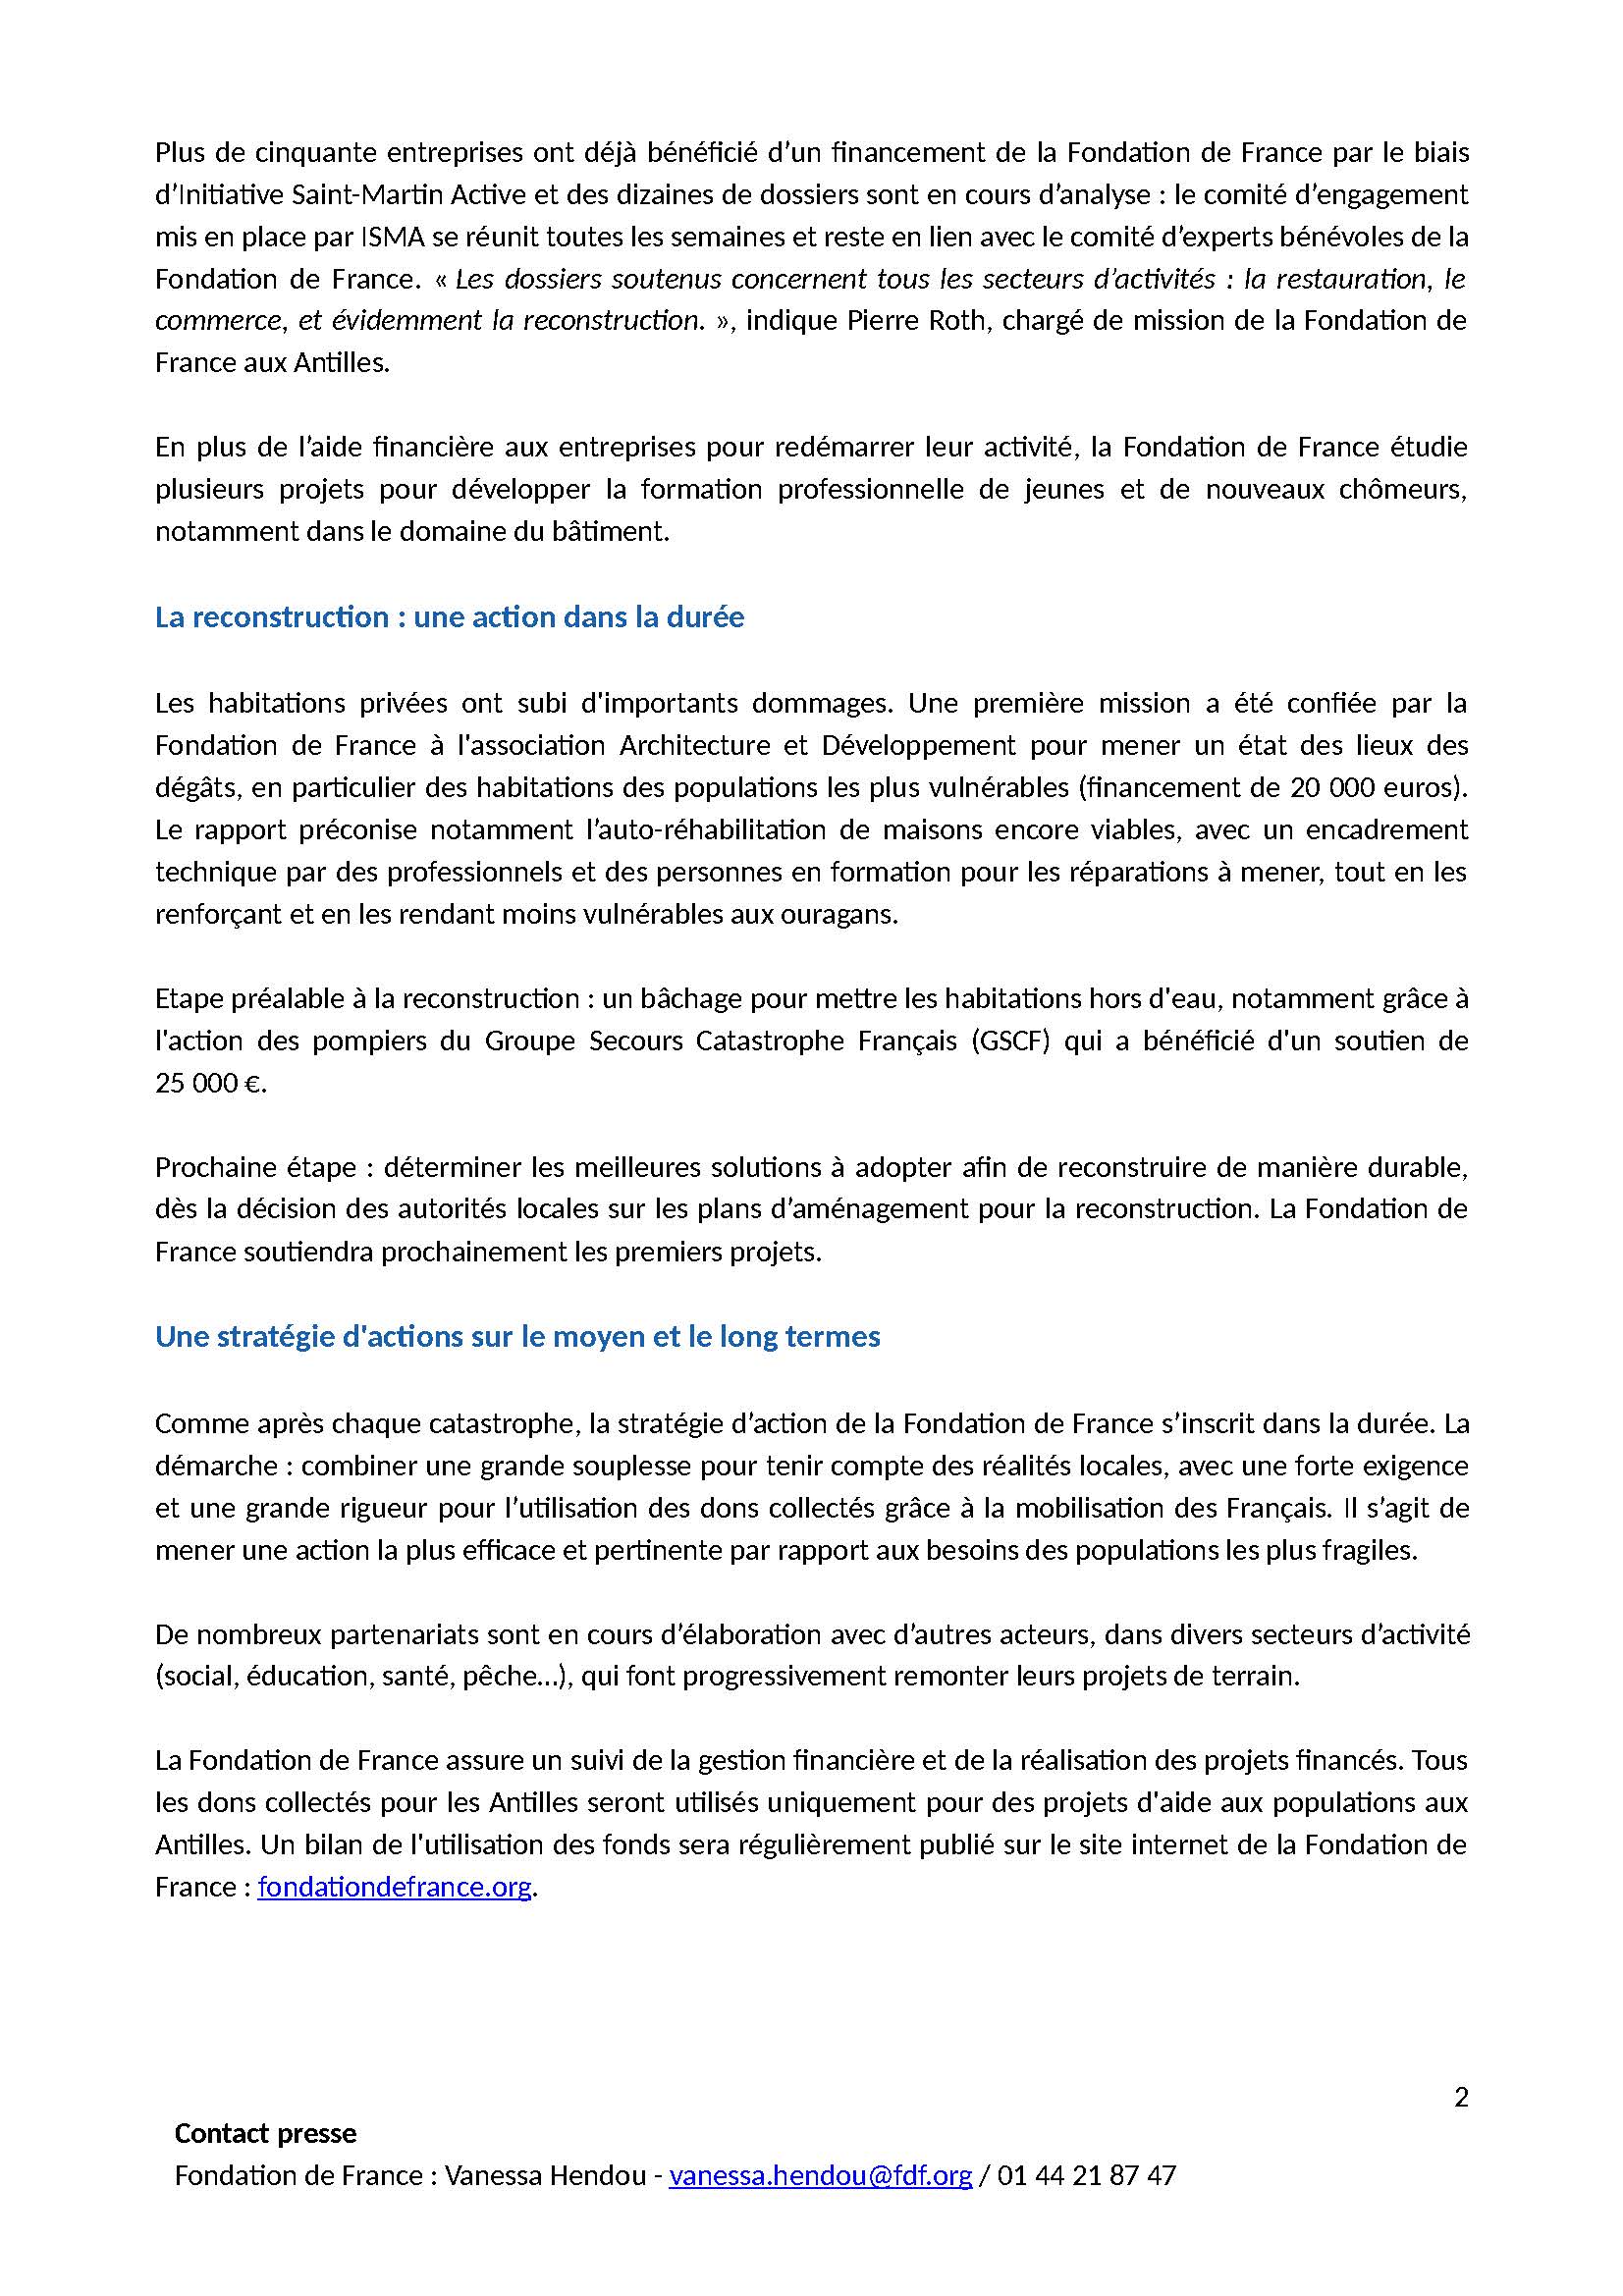 cp-solidarite-antilles-2-mois-fondation-de-france_page_2